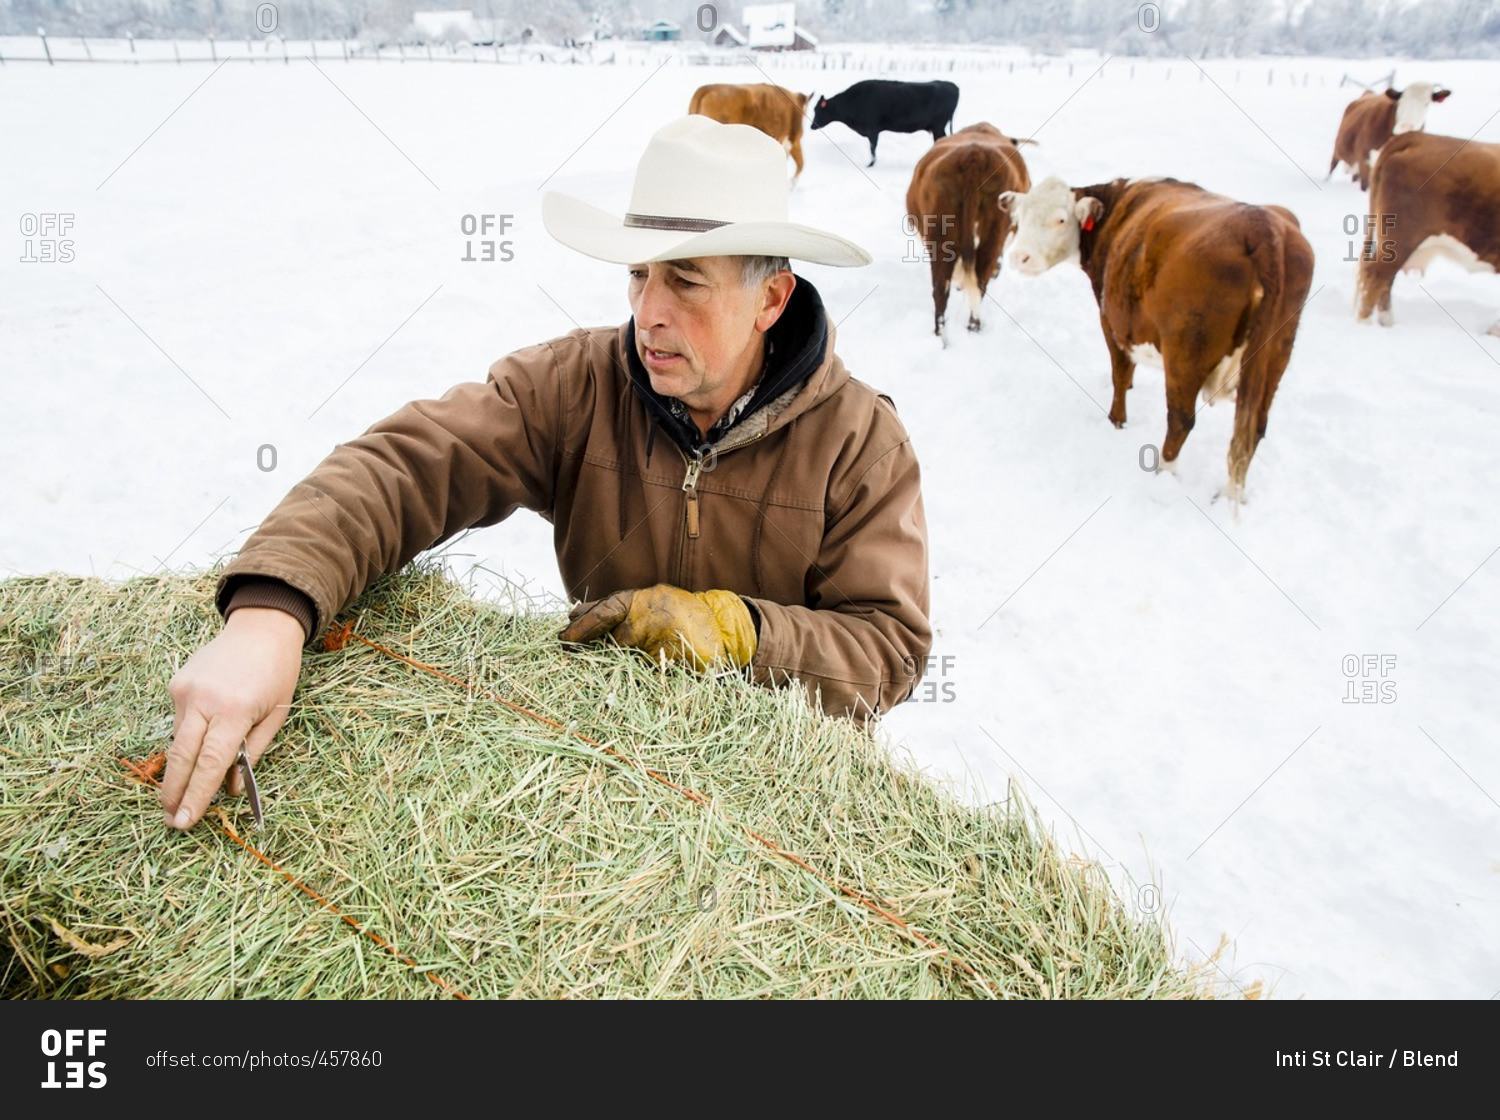 Caucasian farmer hauling hay in snowy field